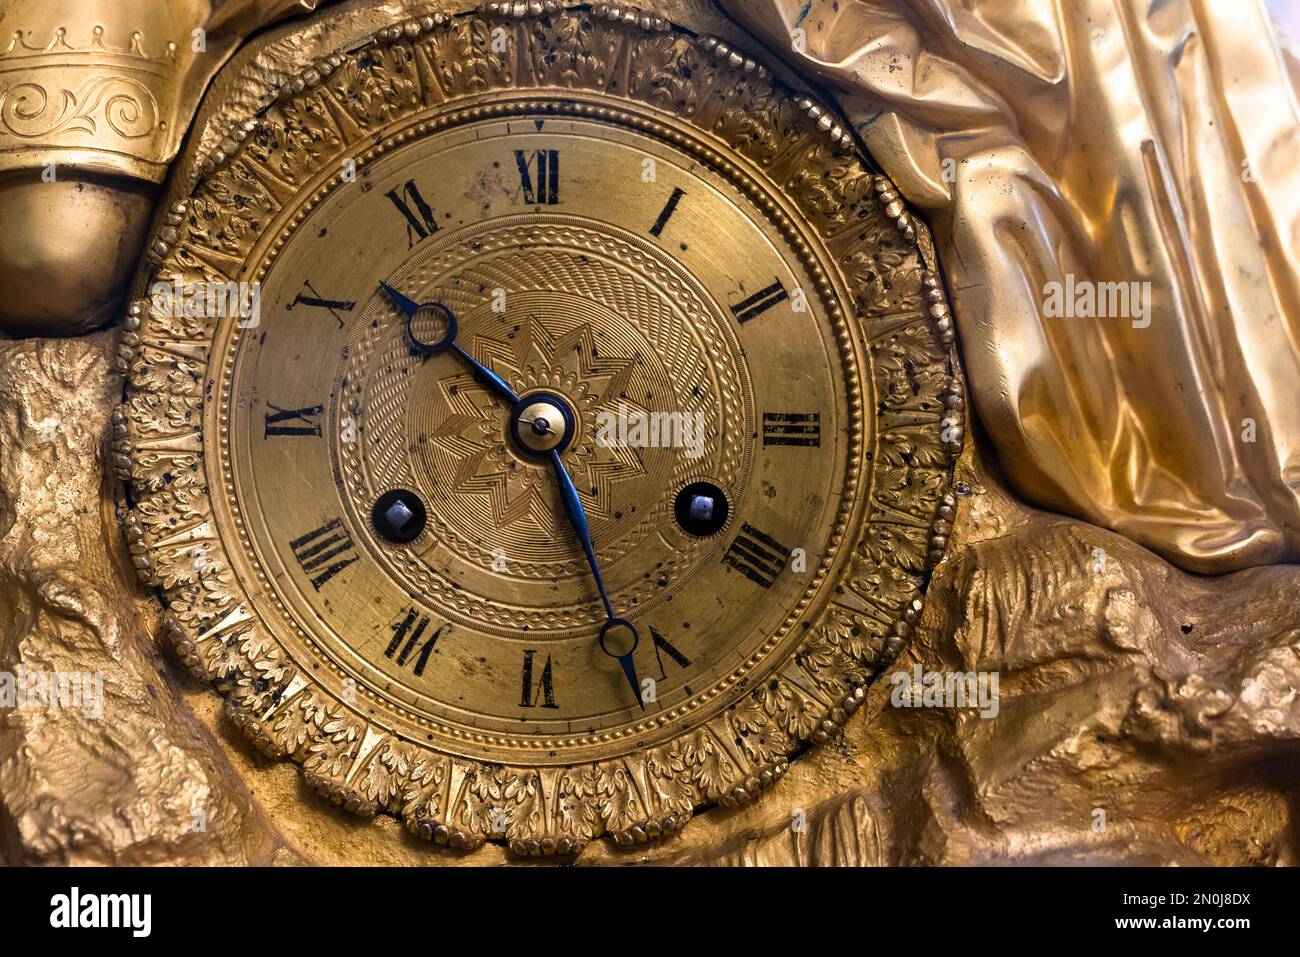 Affare di orologio da tavolo vintage con decorazione in ottone e numeri romani. Primo piano, vista frontale Foto Stock